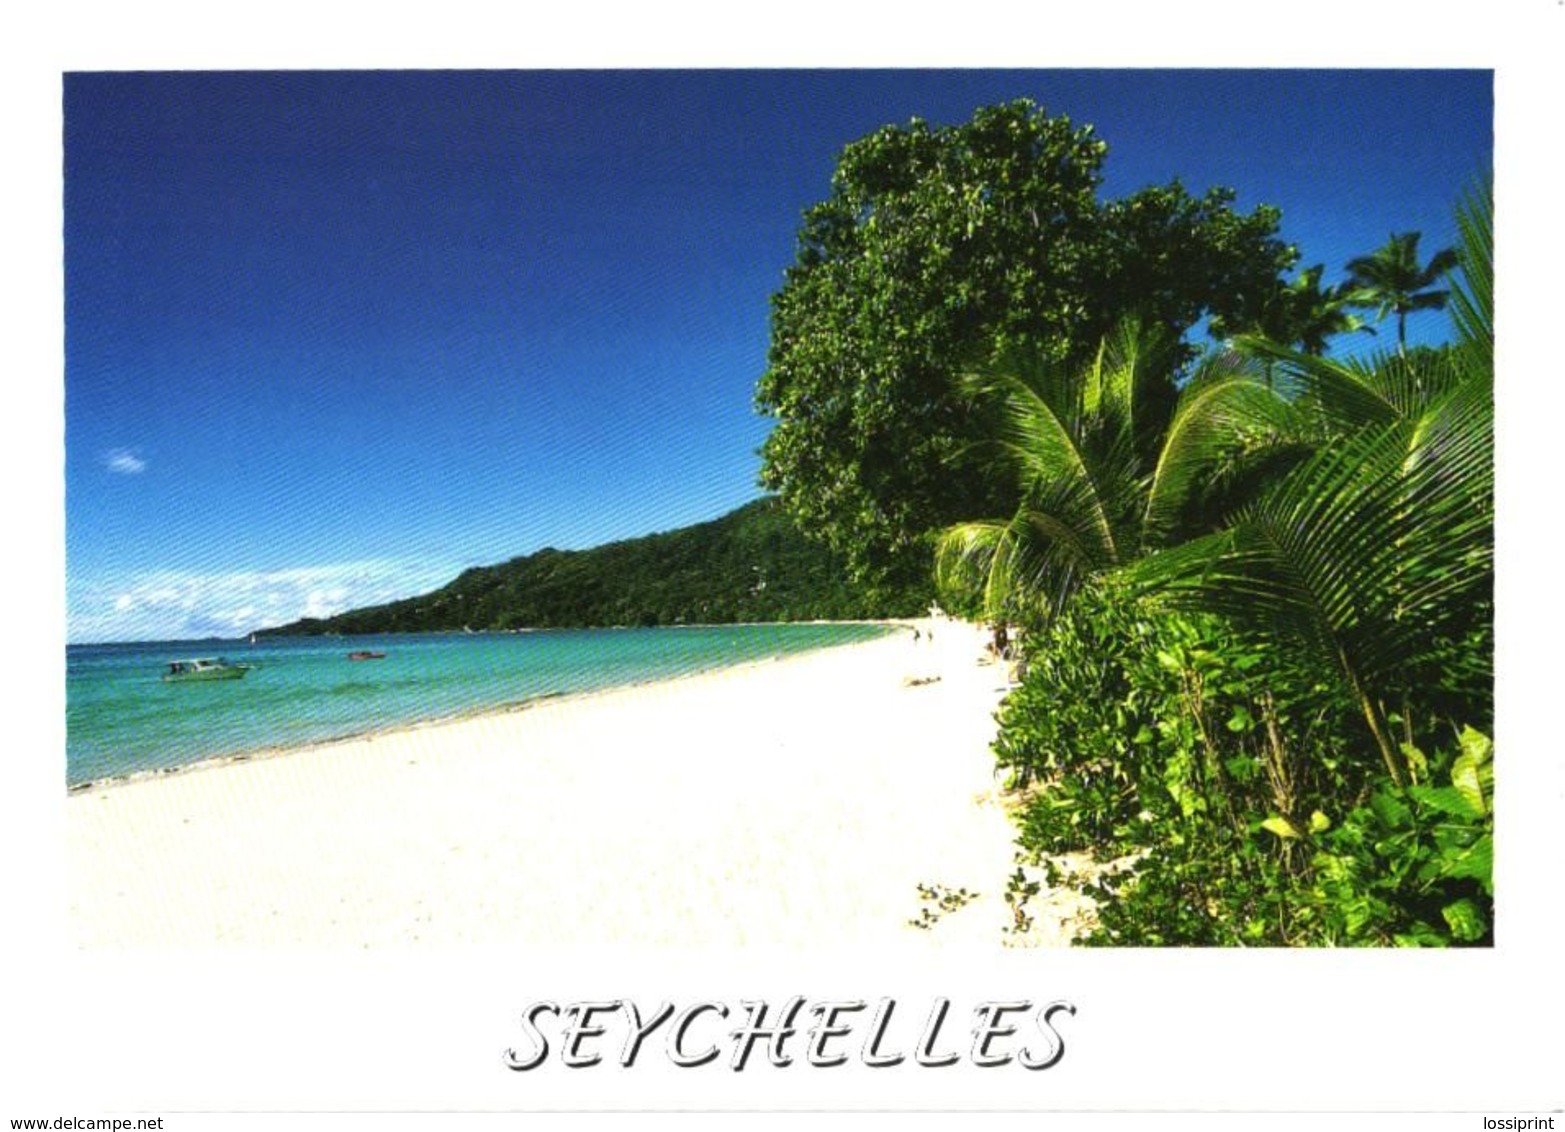 Seychelles:Mahe, Beau Vallon, Beach - Seychelles